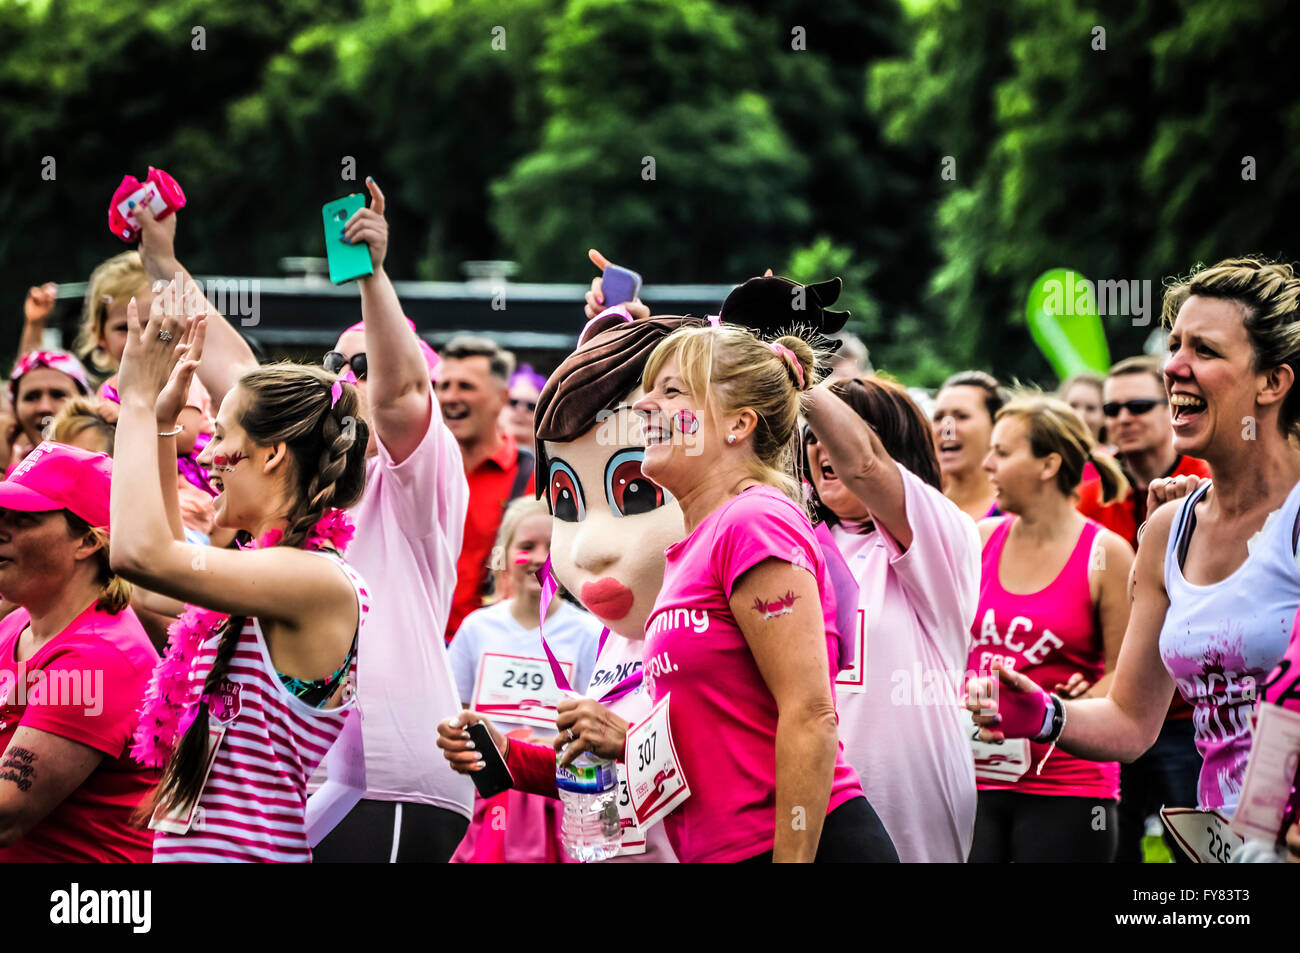 La foule lors de la course de charité pour le cancer. Les coureurs de rose. Tout le monde smiling Banque D'Images